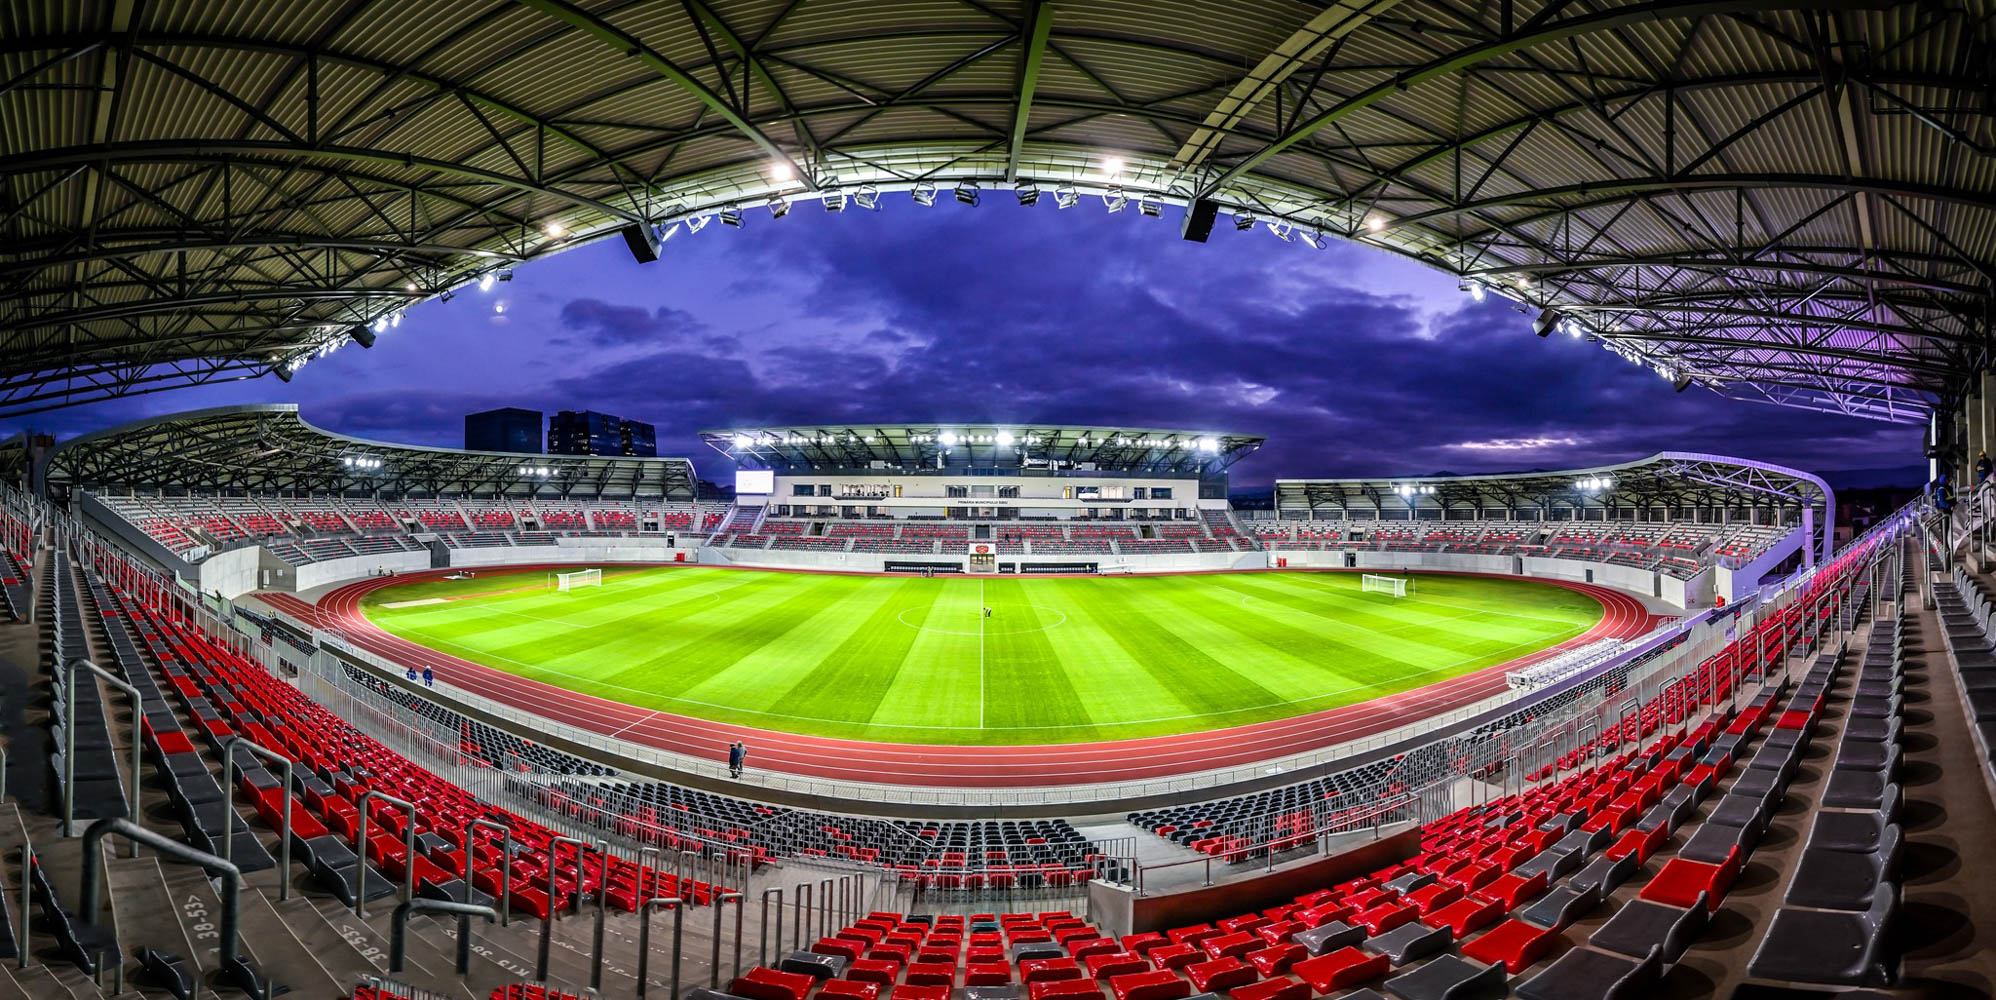 File:Stadionul municipal sibiu4.jpg - Wikimedia Commons